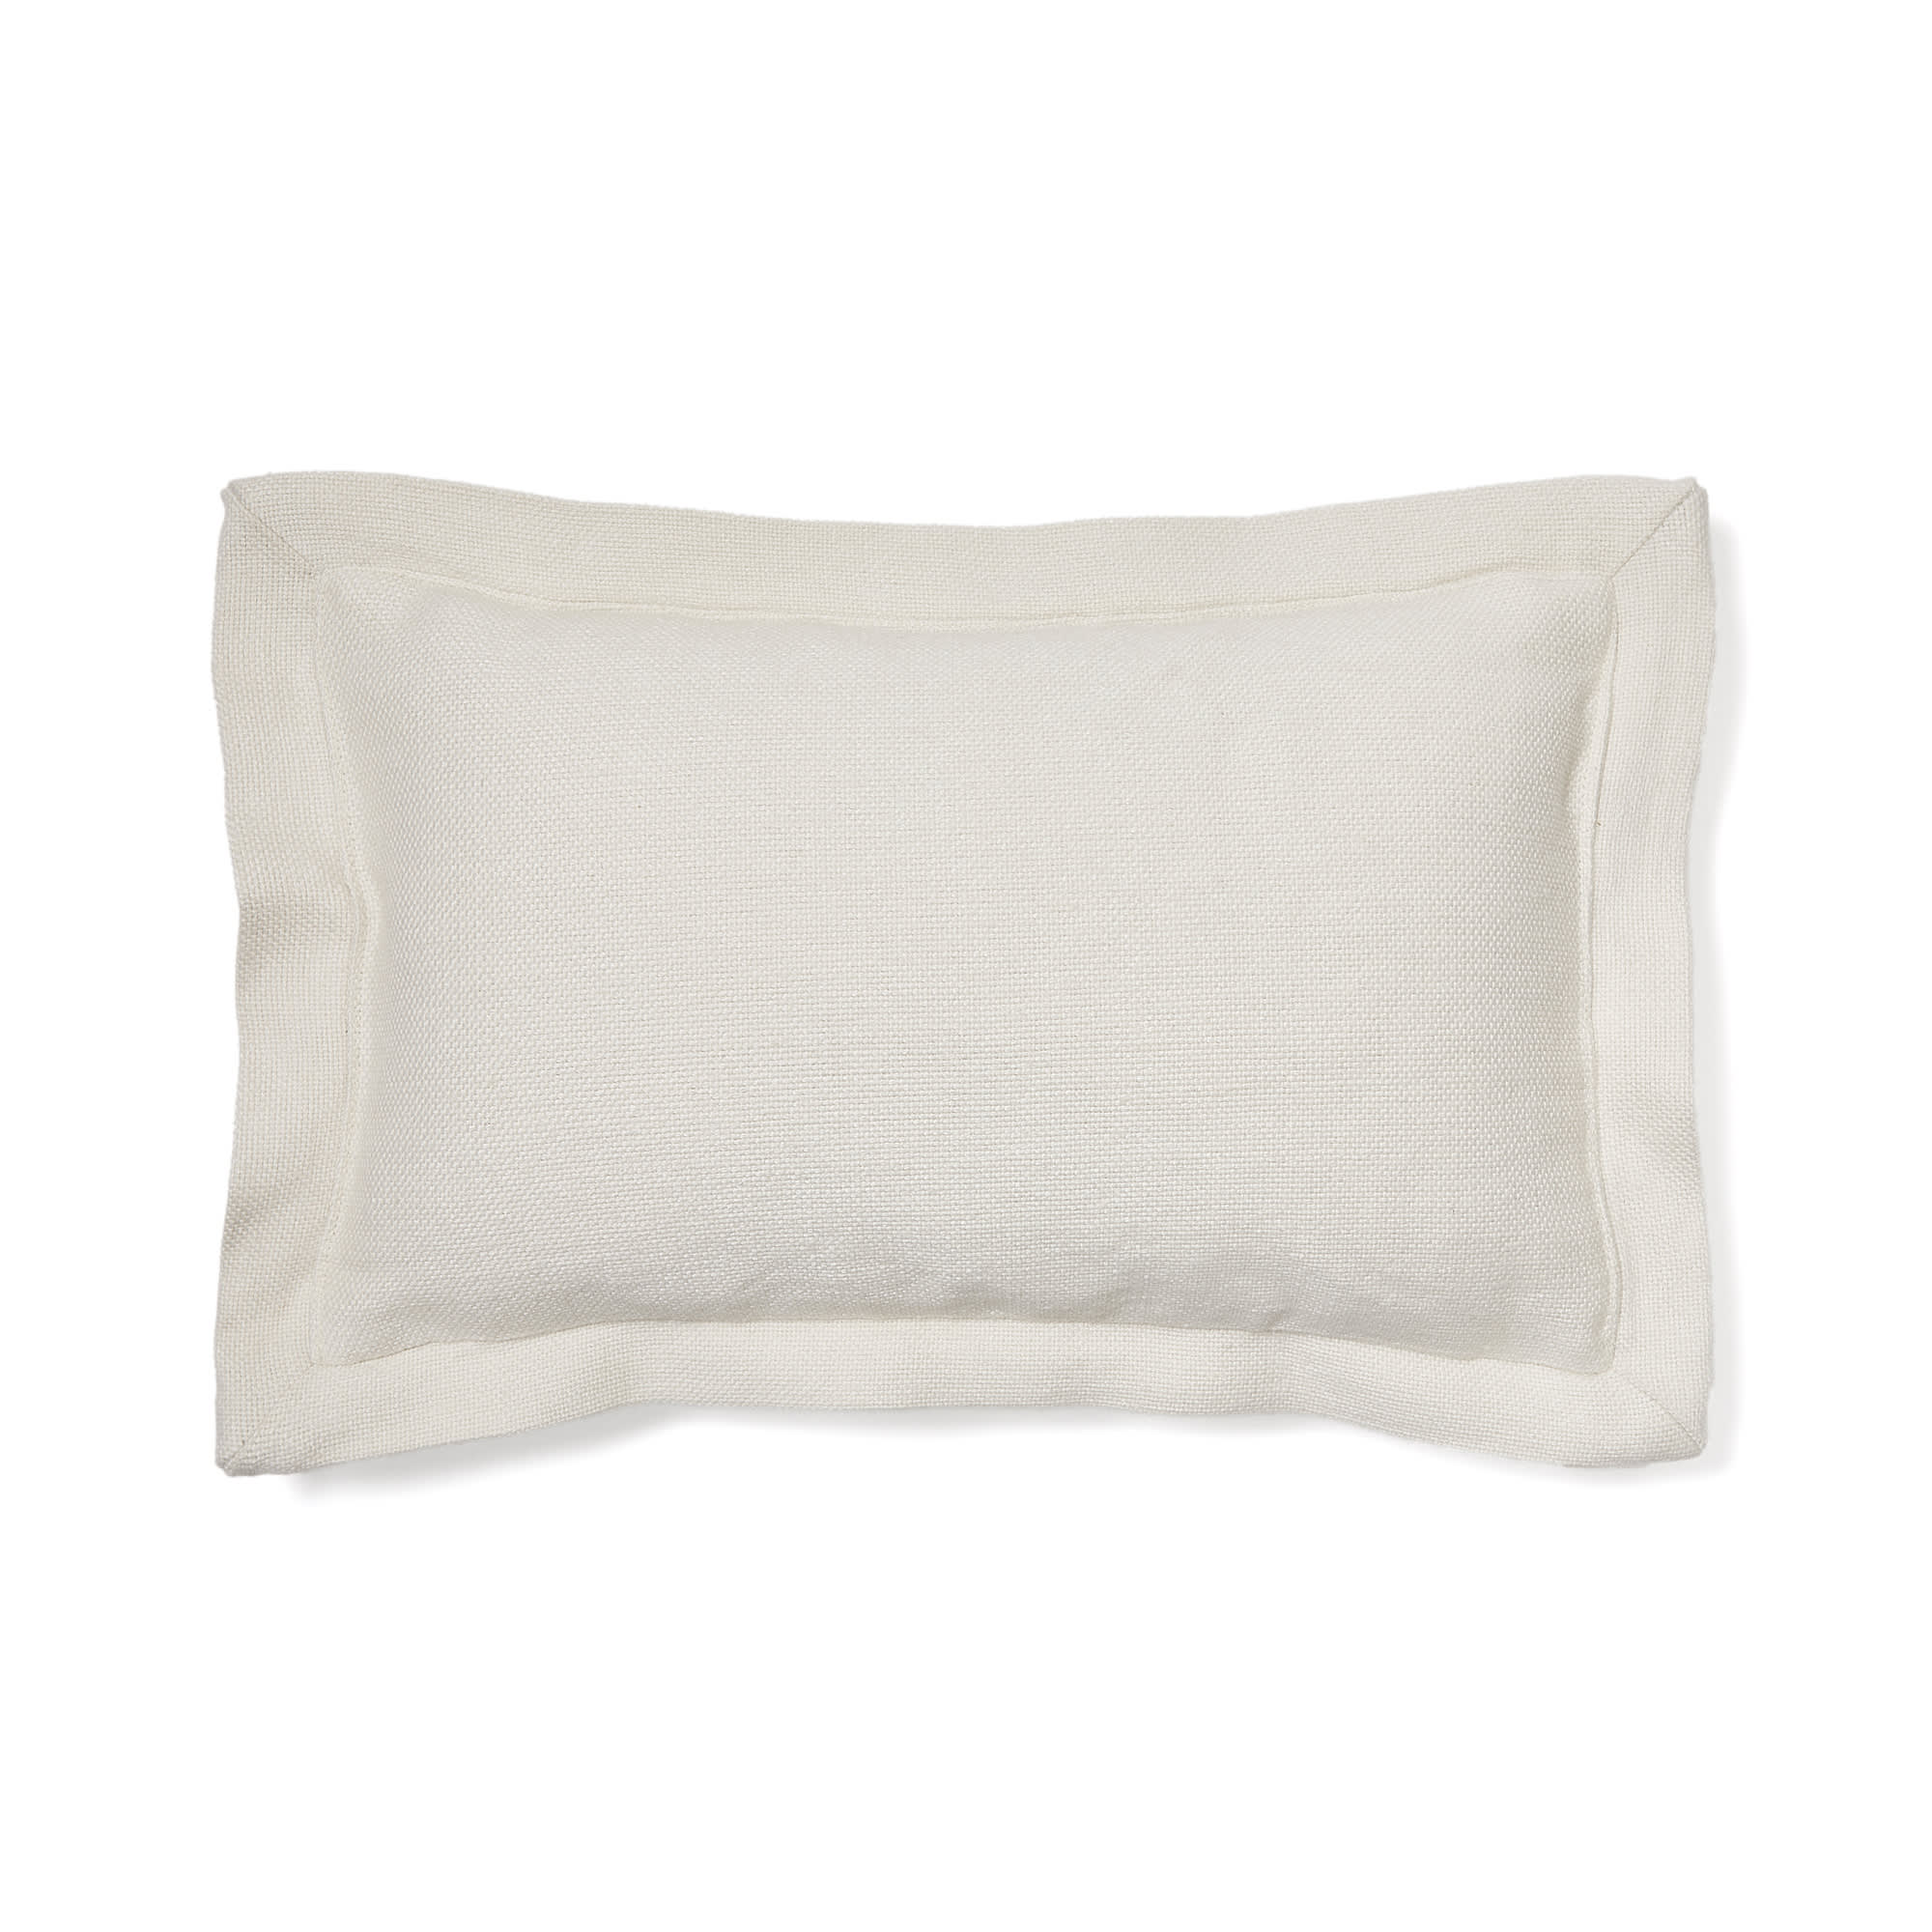 Tenassa white cushion cover 100% PET 30 x 50 cm